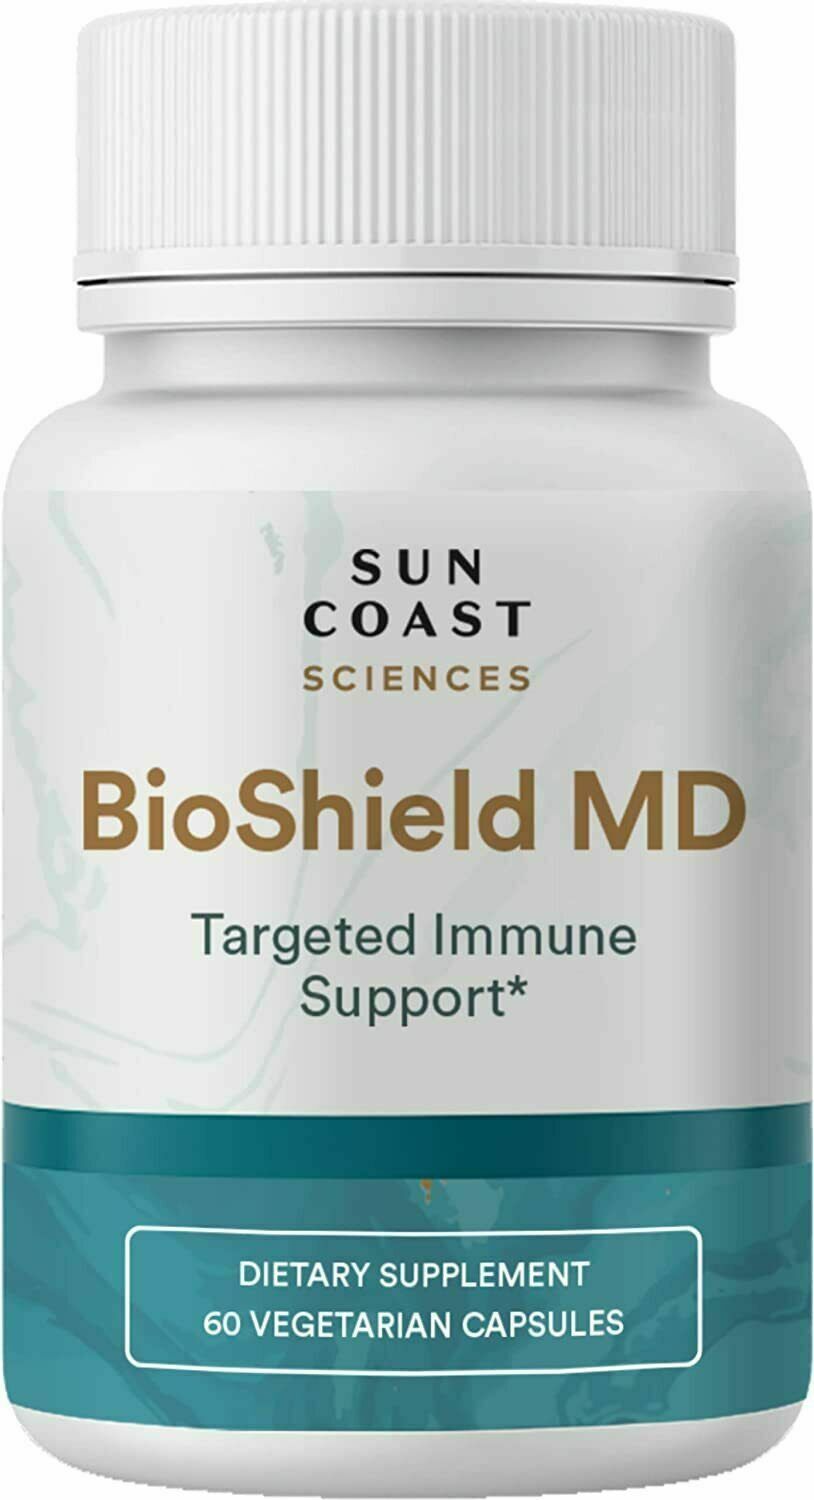 Sun Coast Sciences BioShield MD - Premium Immunity Support, 60 Capsules